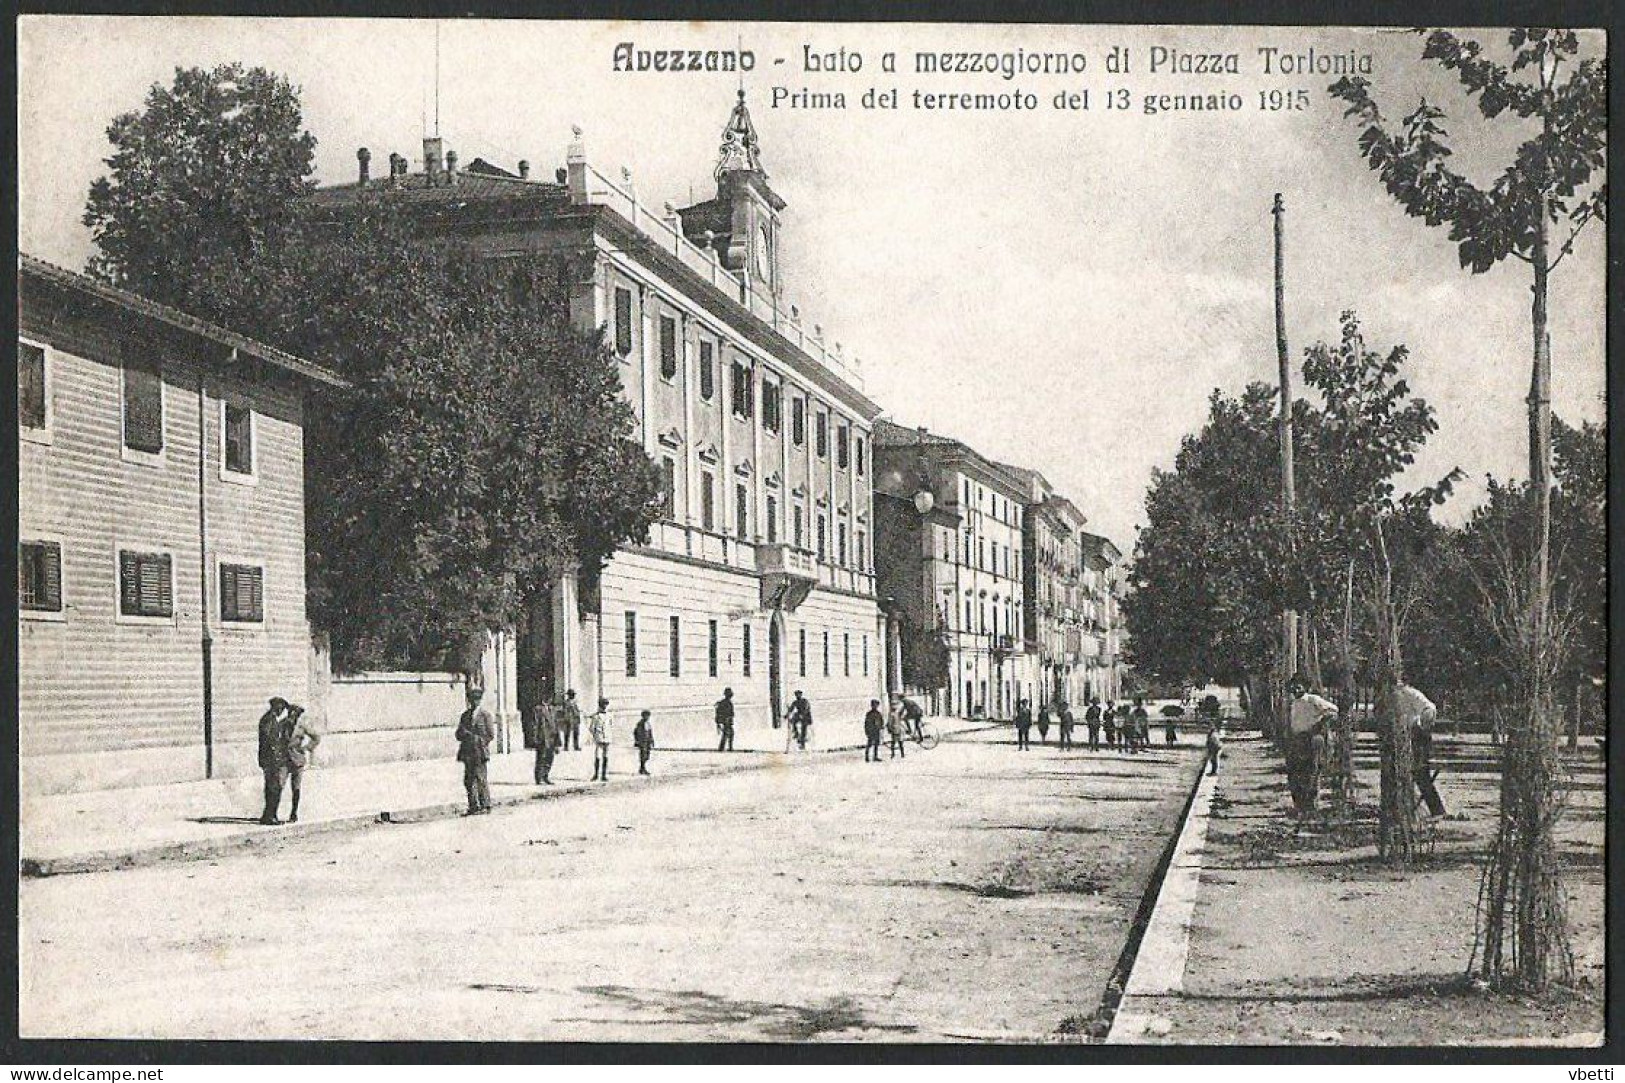 Italia / Italien / Italy: Avezzano, Lato A Mezzogiorno Di Piazza Torlonia / Prima Del Terremoto Del 13 Gennaio 1915 - Avezzano